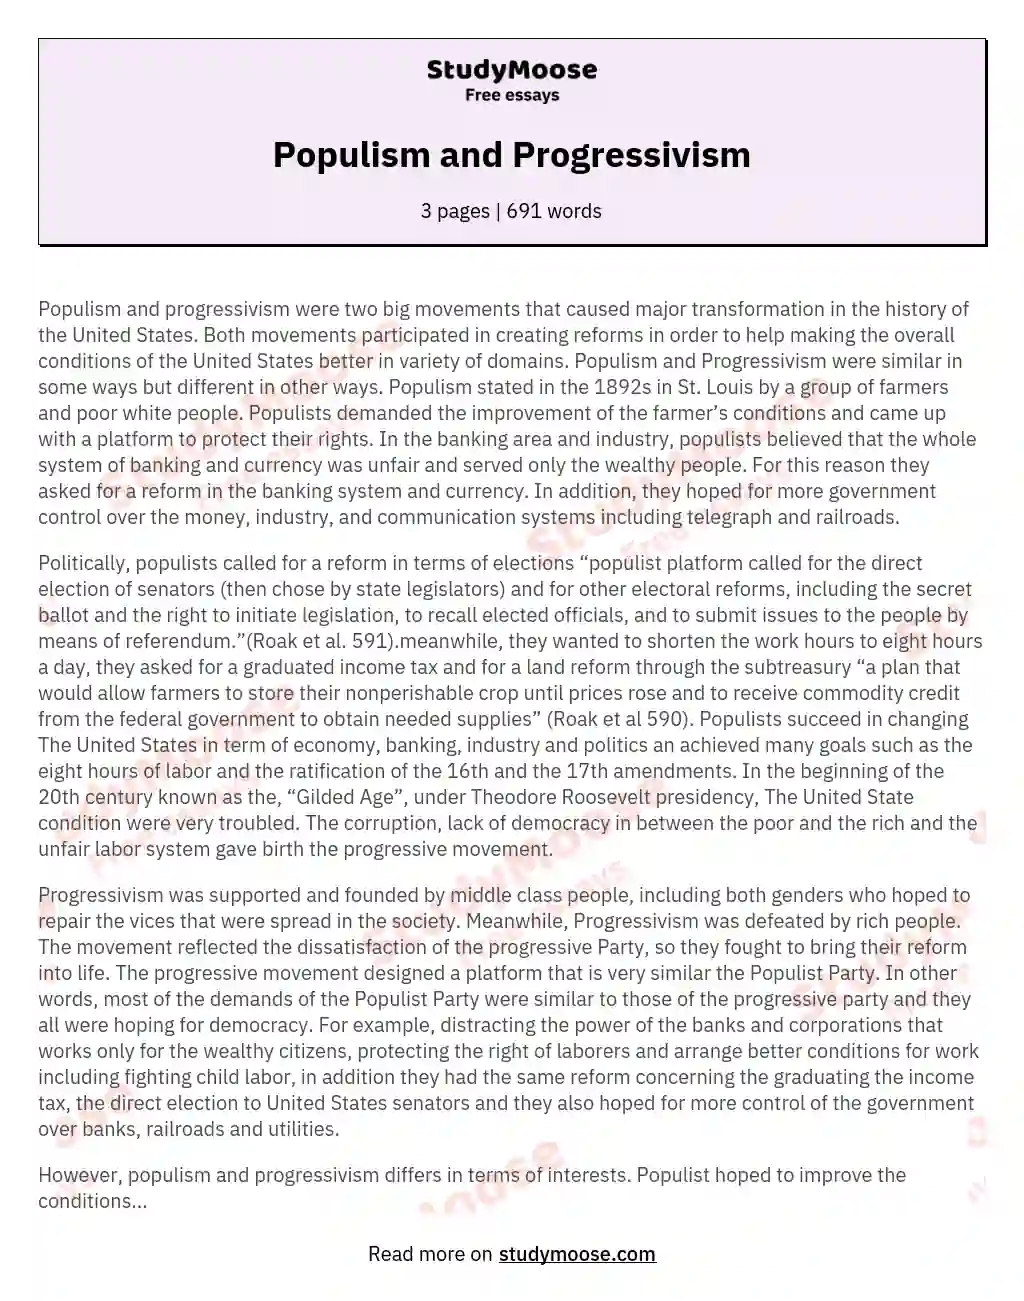 Populism and Progressivism essay